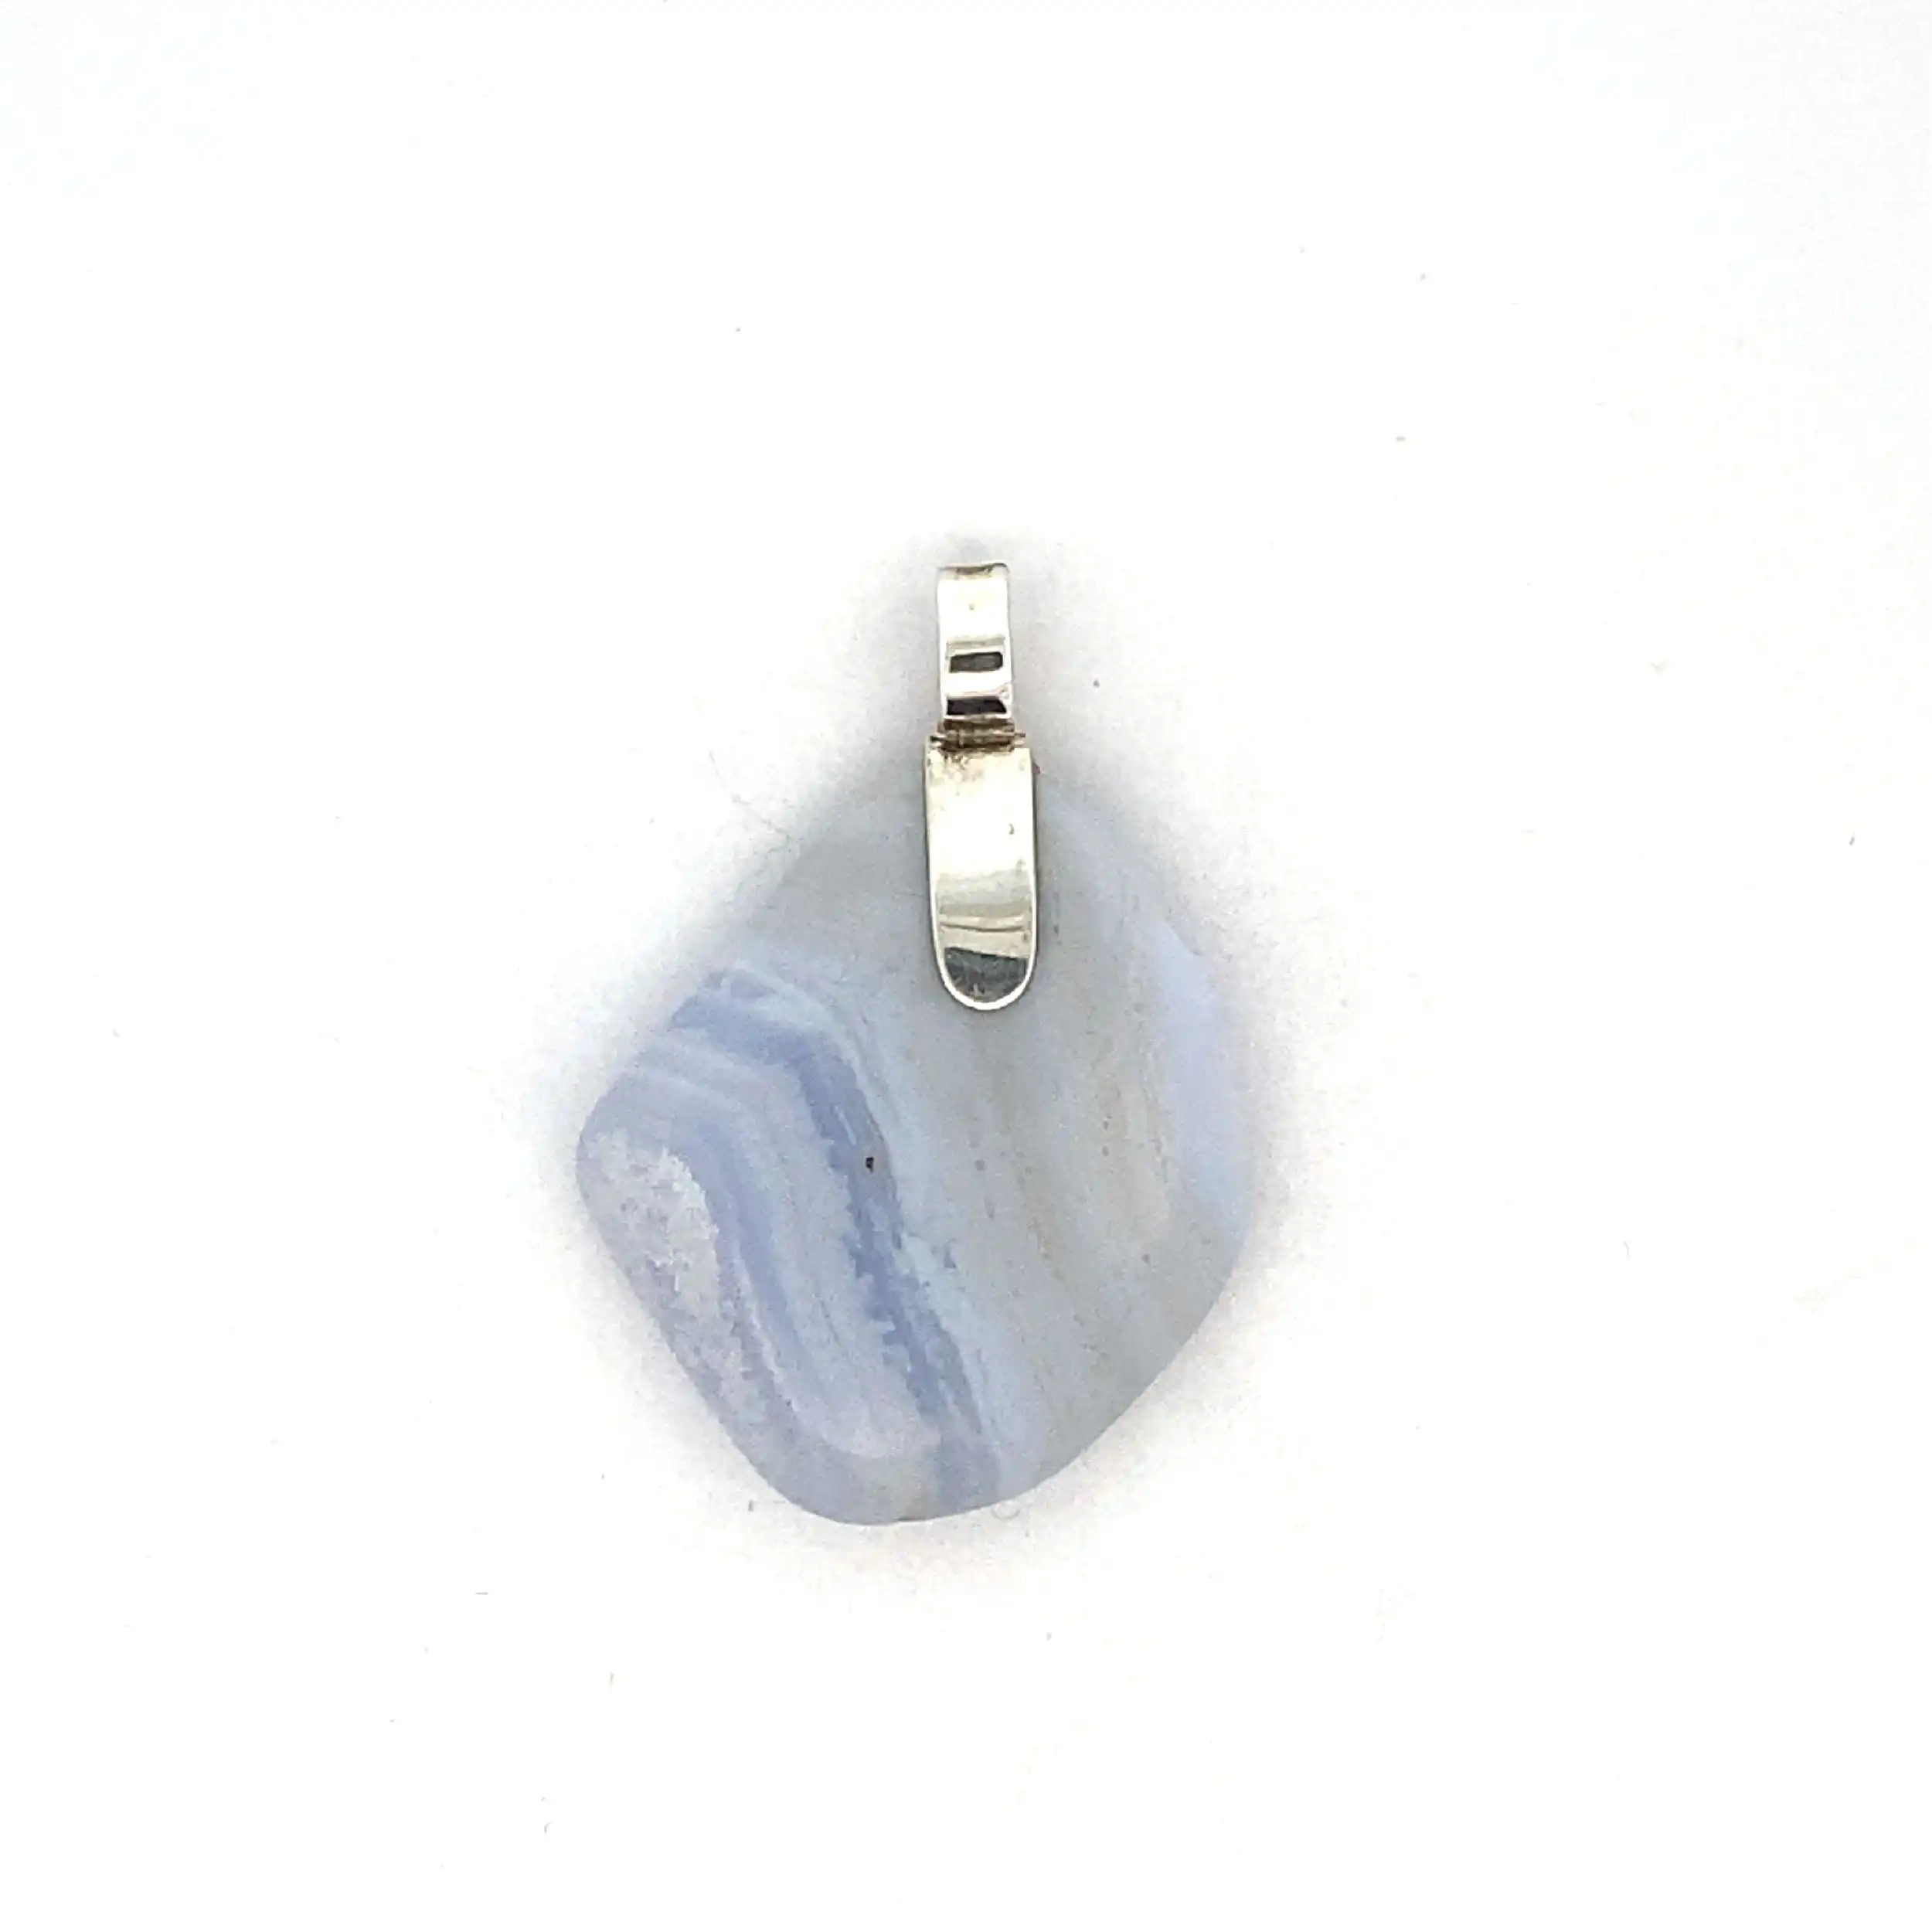 Silberanhänger mit blauem Stein